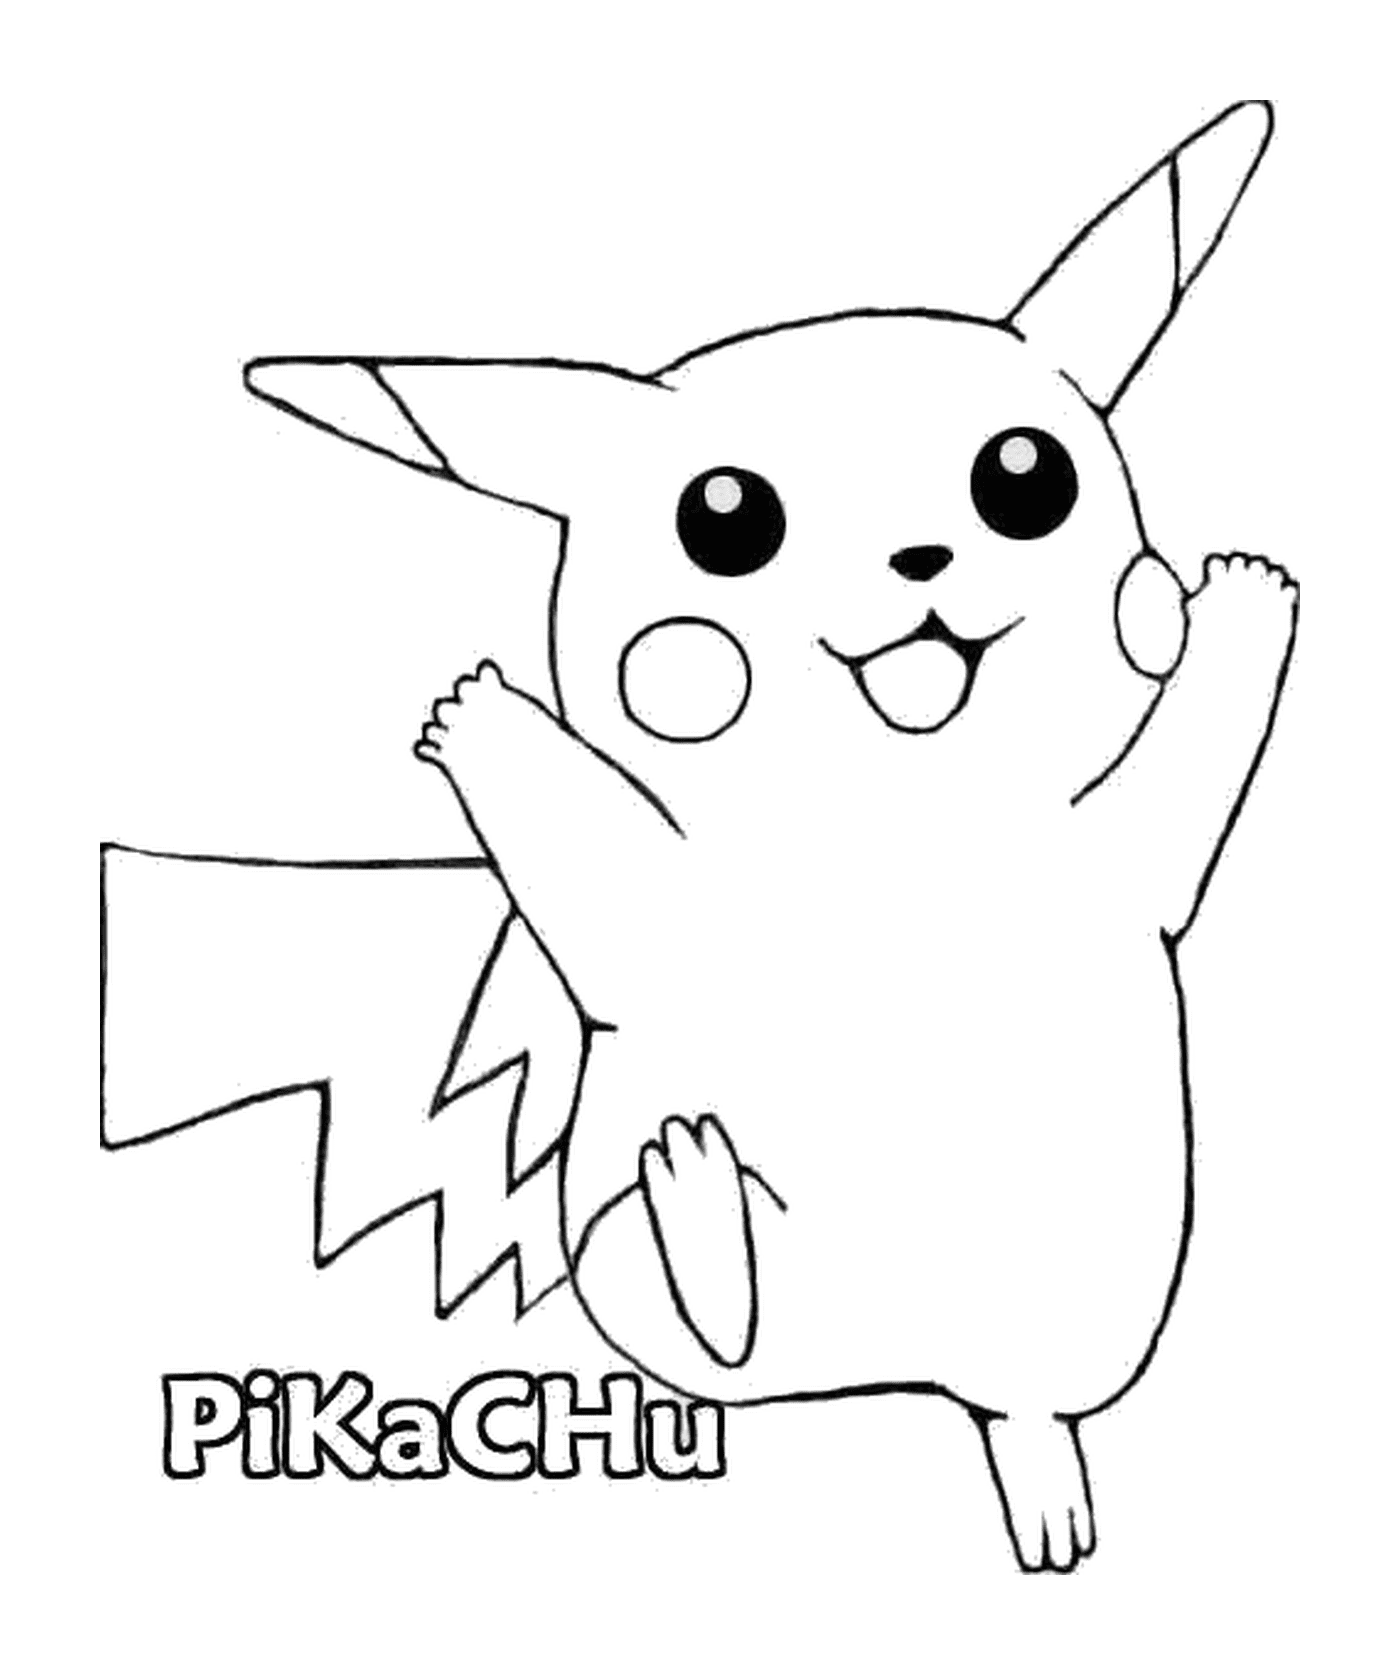   Pikachu : Adorable souris électrique 